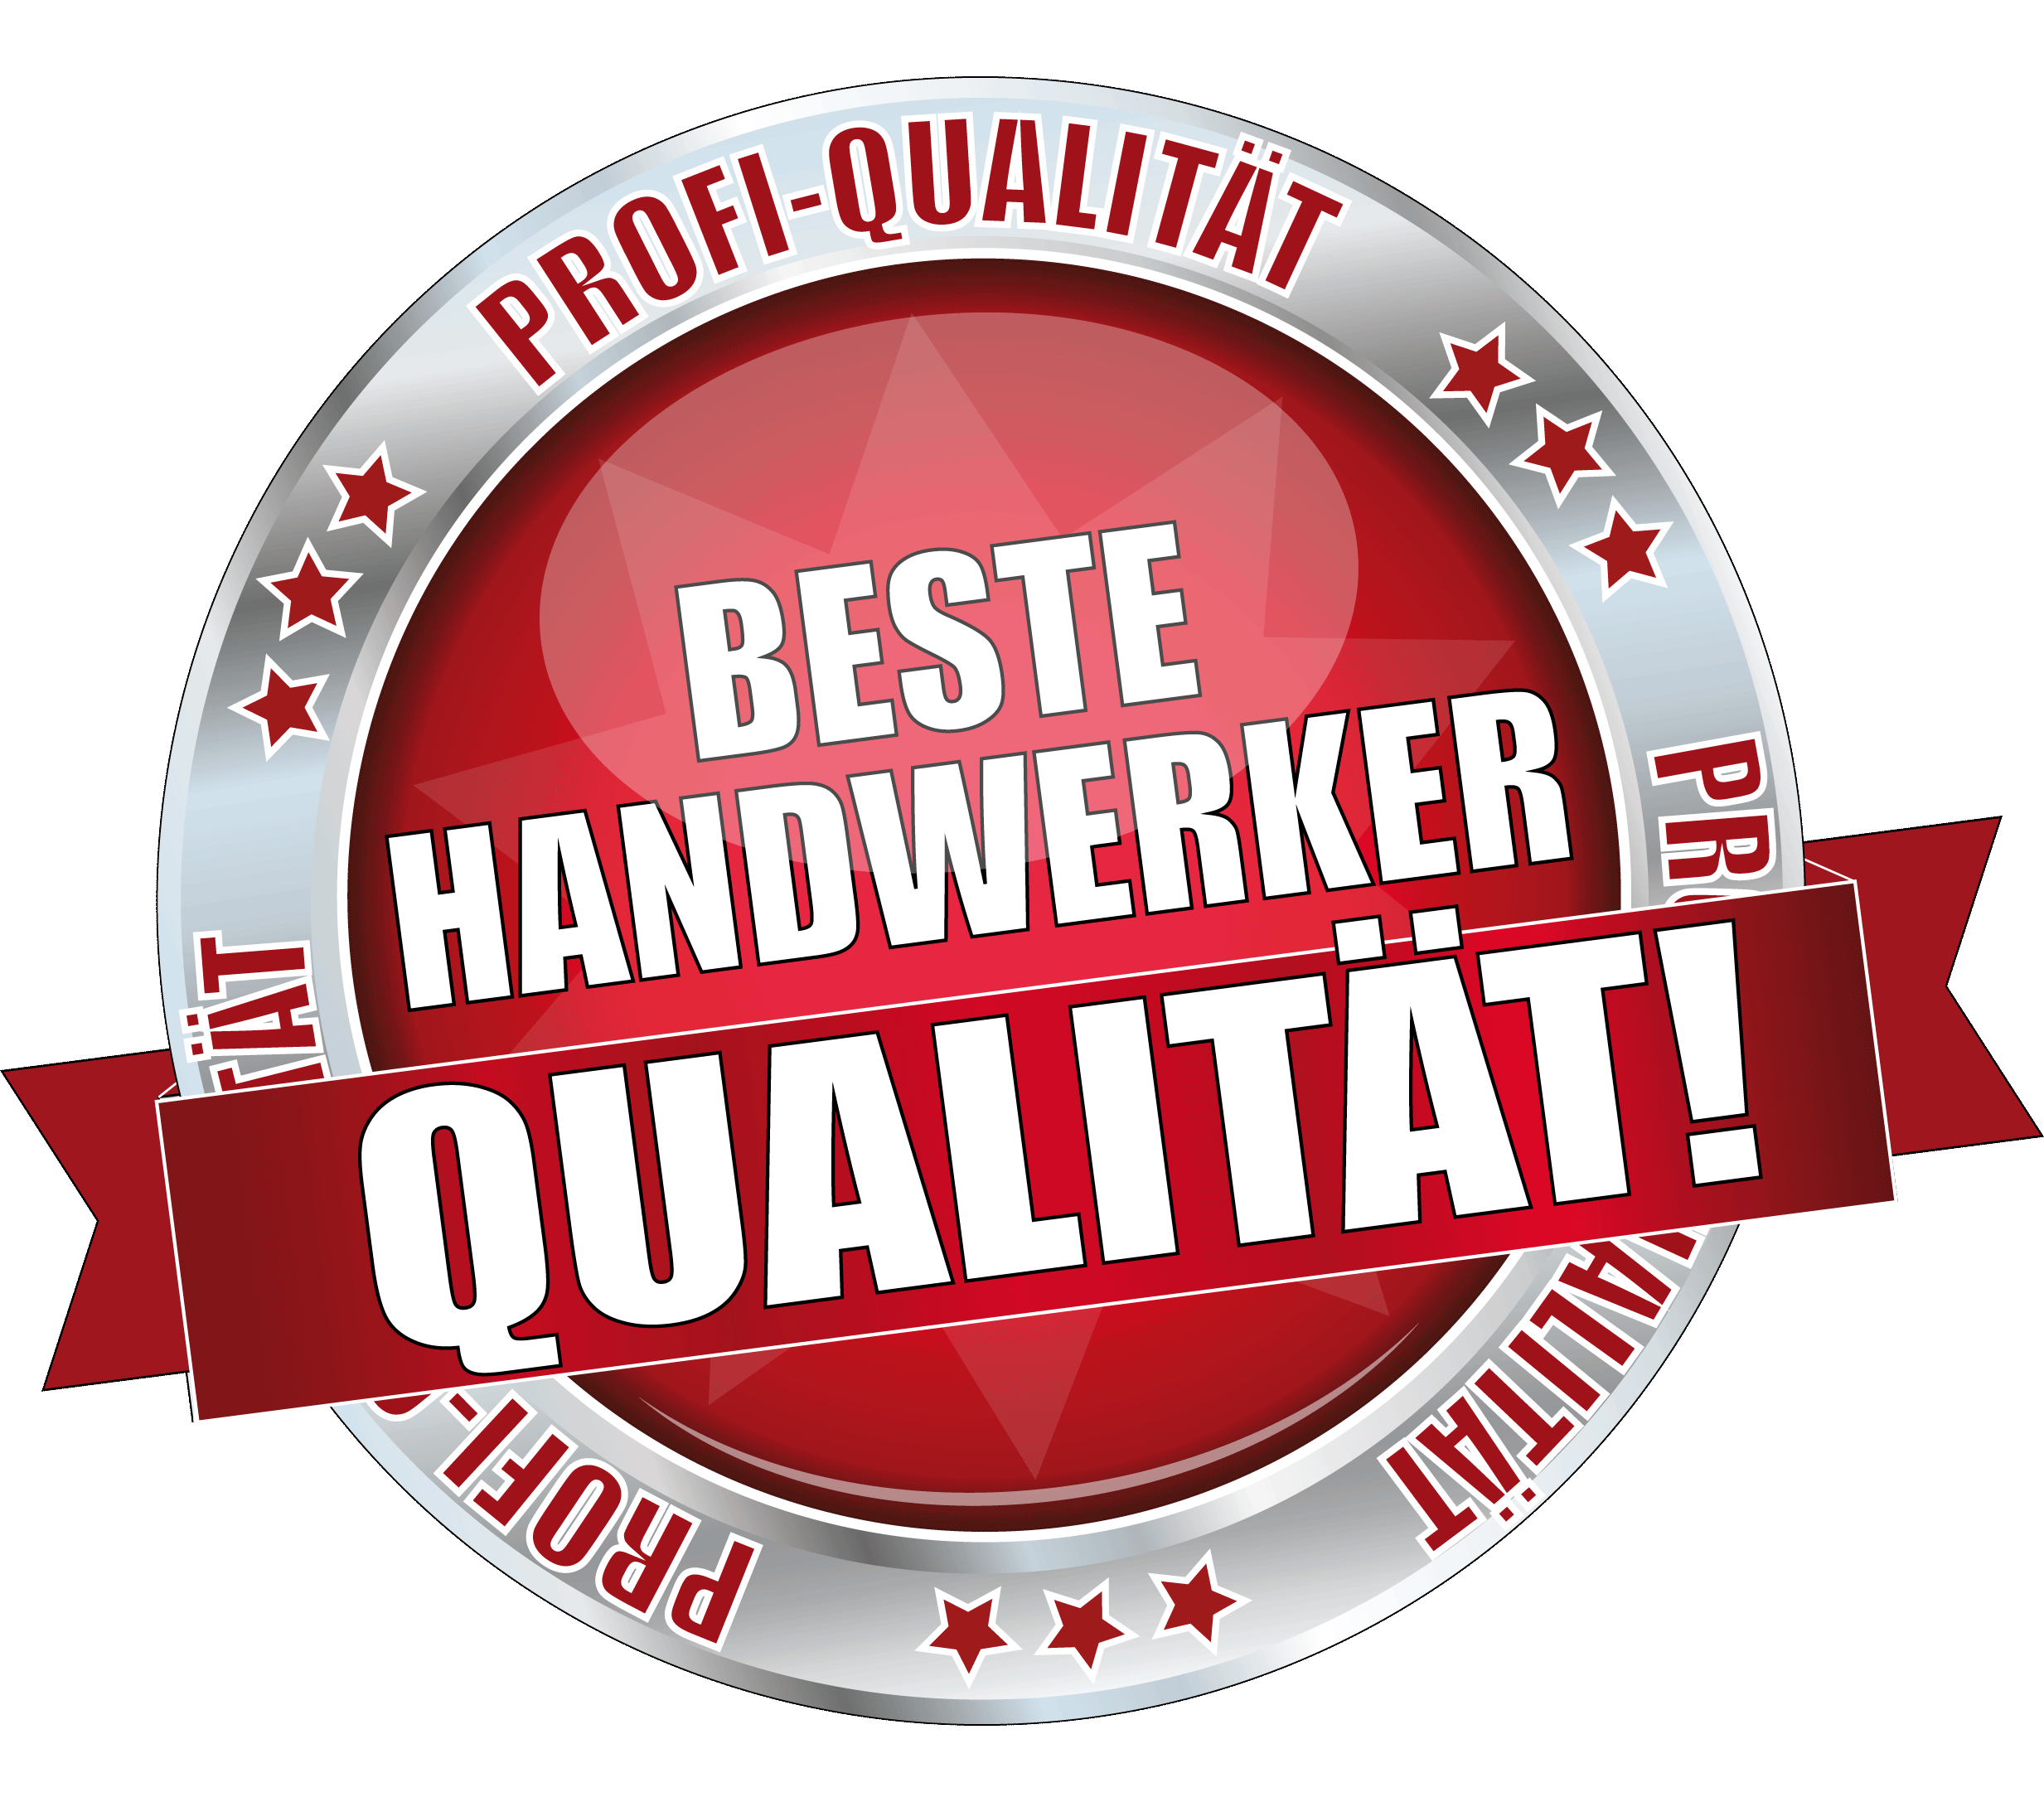 Radex Objektmanagement GmbH Handwerker, Gewerke, Handwerkerservice